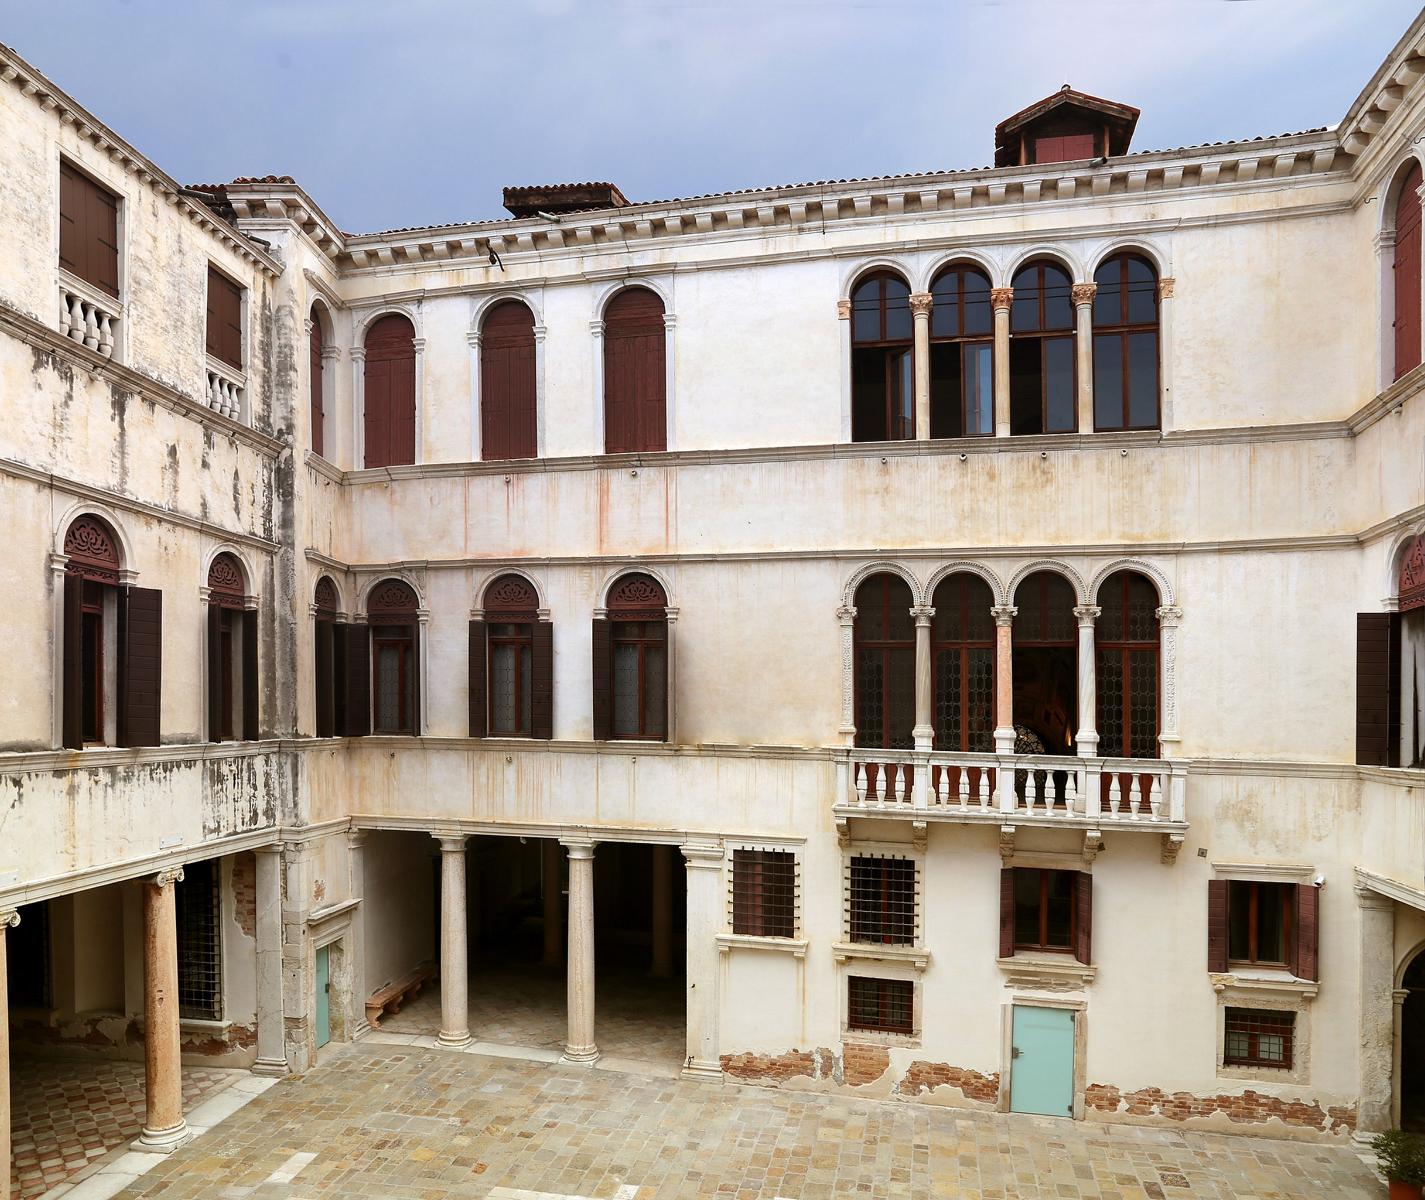 https://commons.wikimedia.org/wiki/File:Palazzo_grimani_di_s.m._formosa,_cortile_del_1560_ca._05.jpg